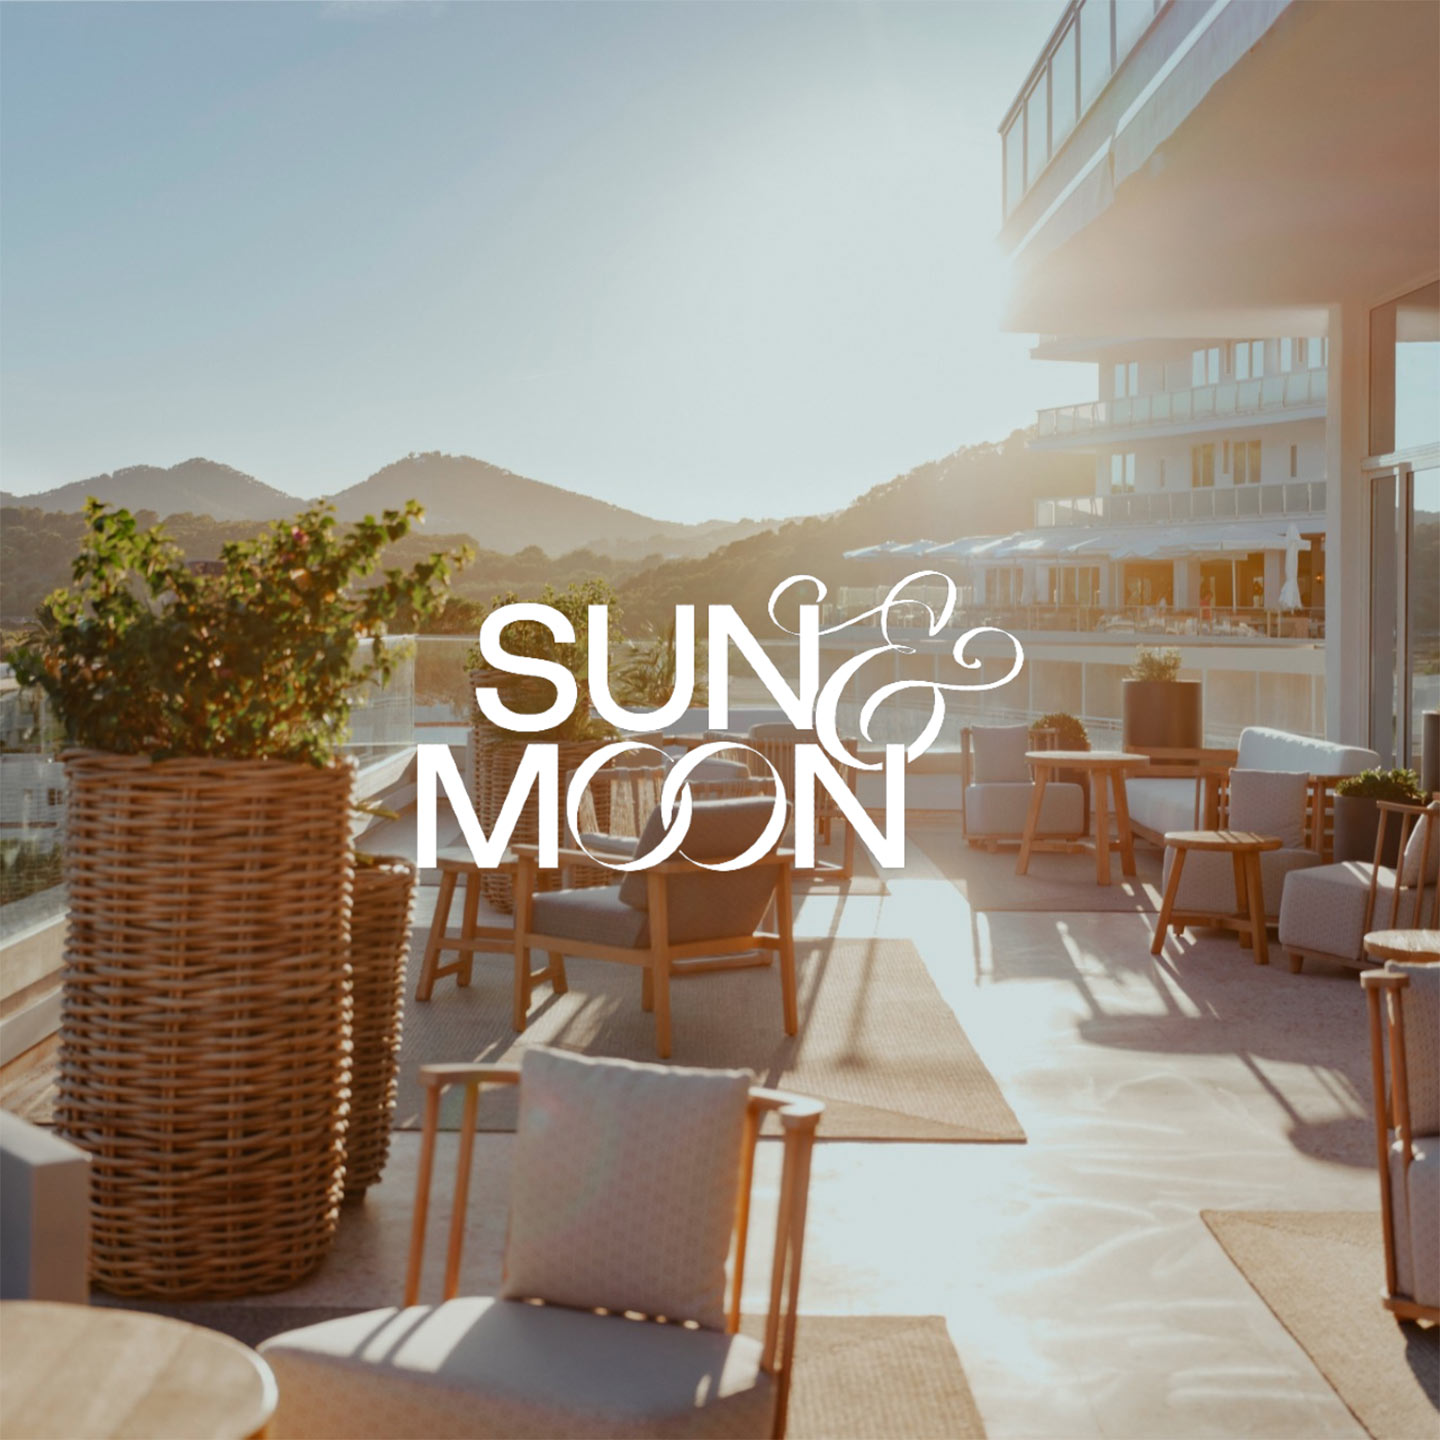 Hyde Ibiza Sun & Moon Outdoor Terrace Logo Overlay